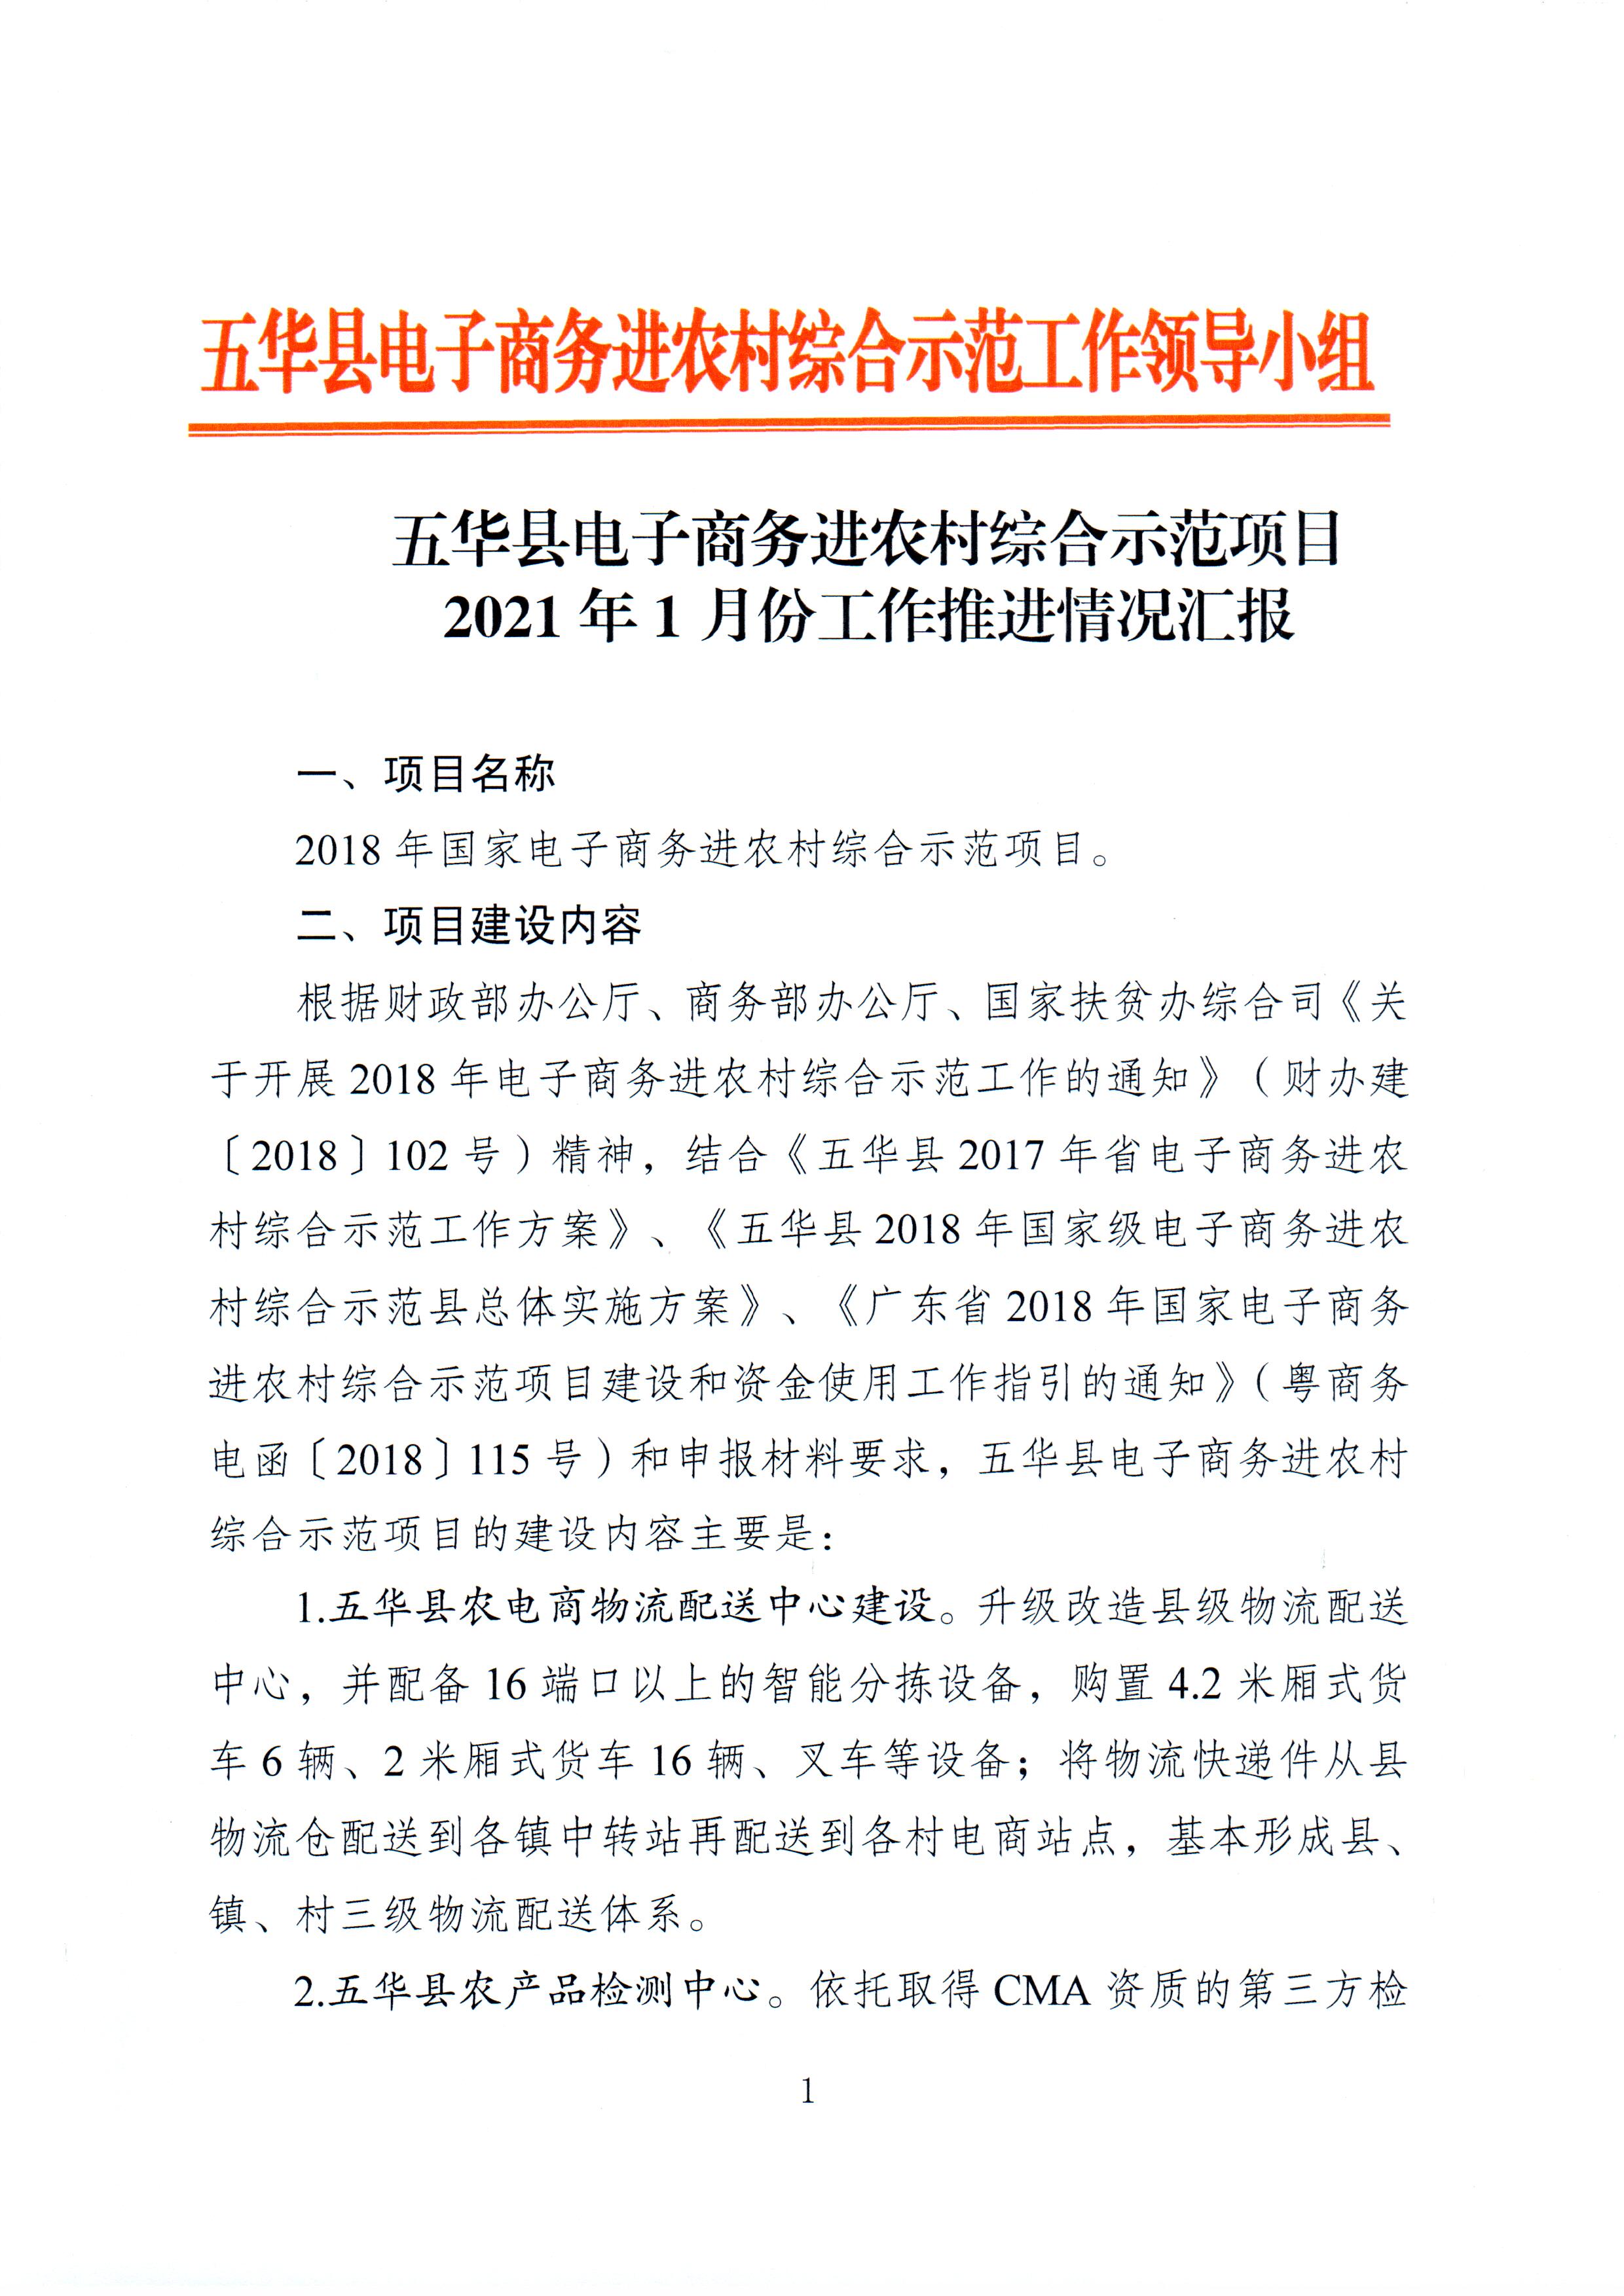 1、五华县电子商务进农村综合示范项目2021年1月工作推进情况（领导小组办公室）--（2021年2月3日确定版） (1).jpg